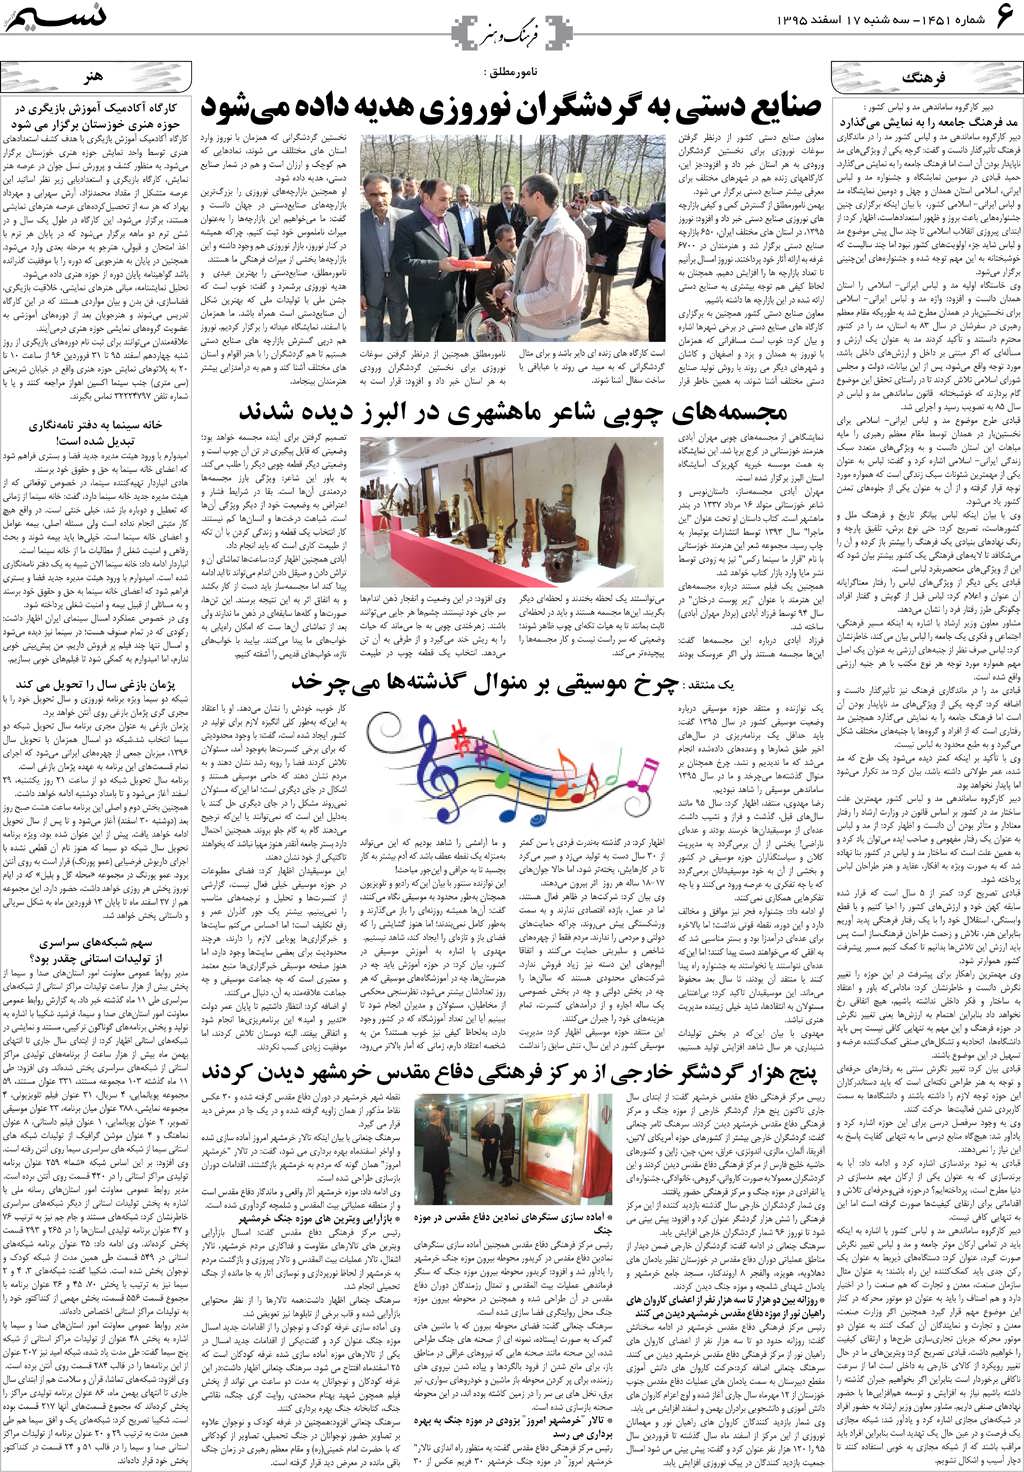 صفحه فرهنگ و هنر روزنامه نسیم شماره 1451